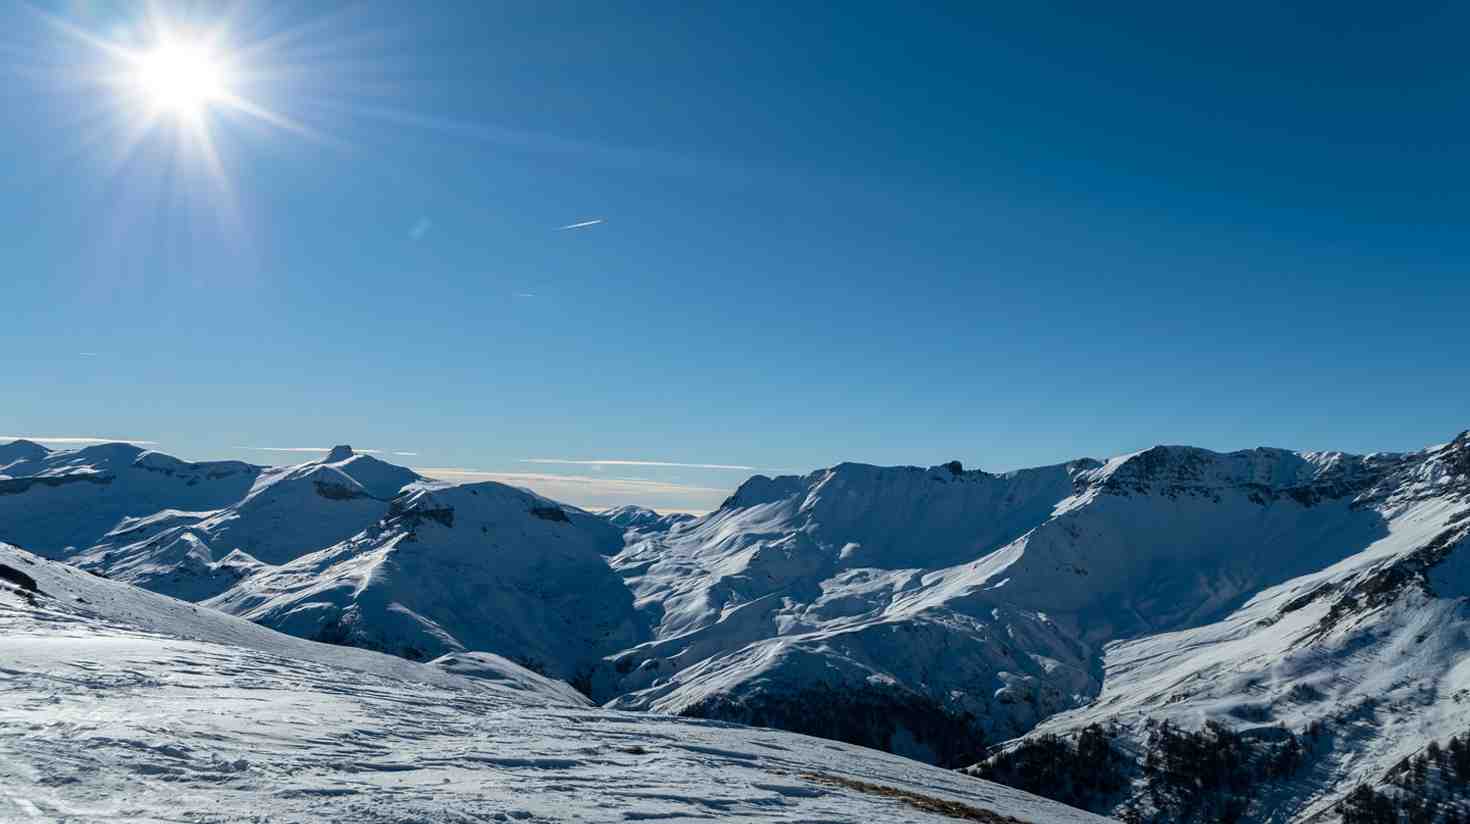 Quelle est la station de ski la plus ensoleillée?